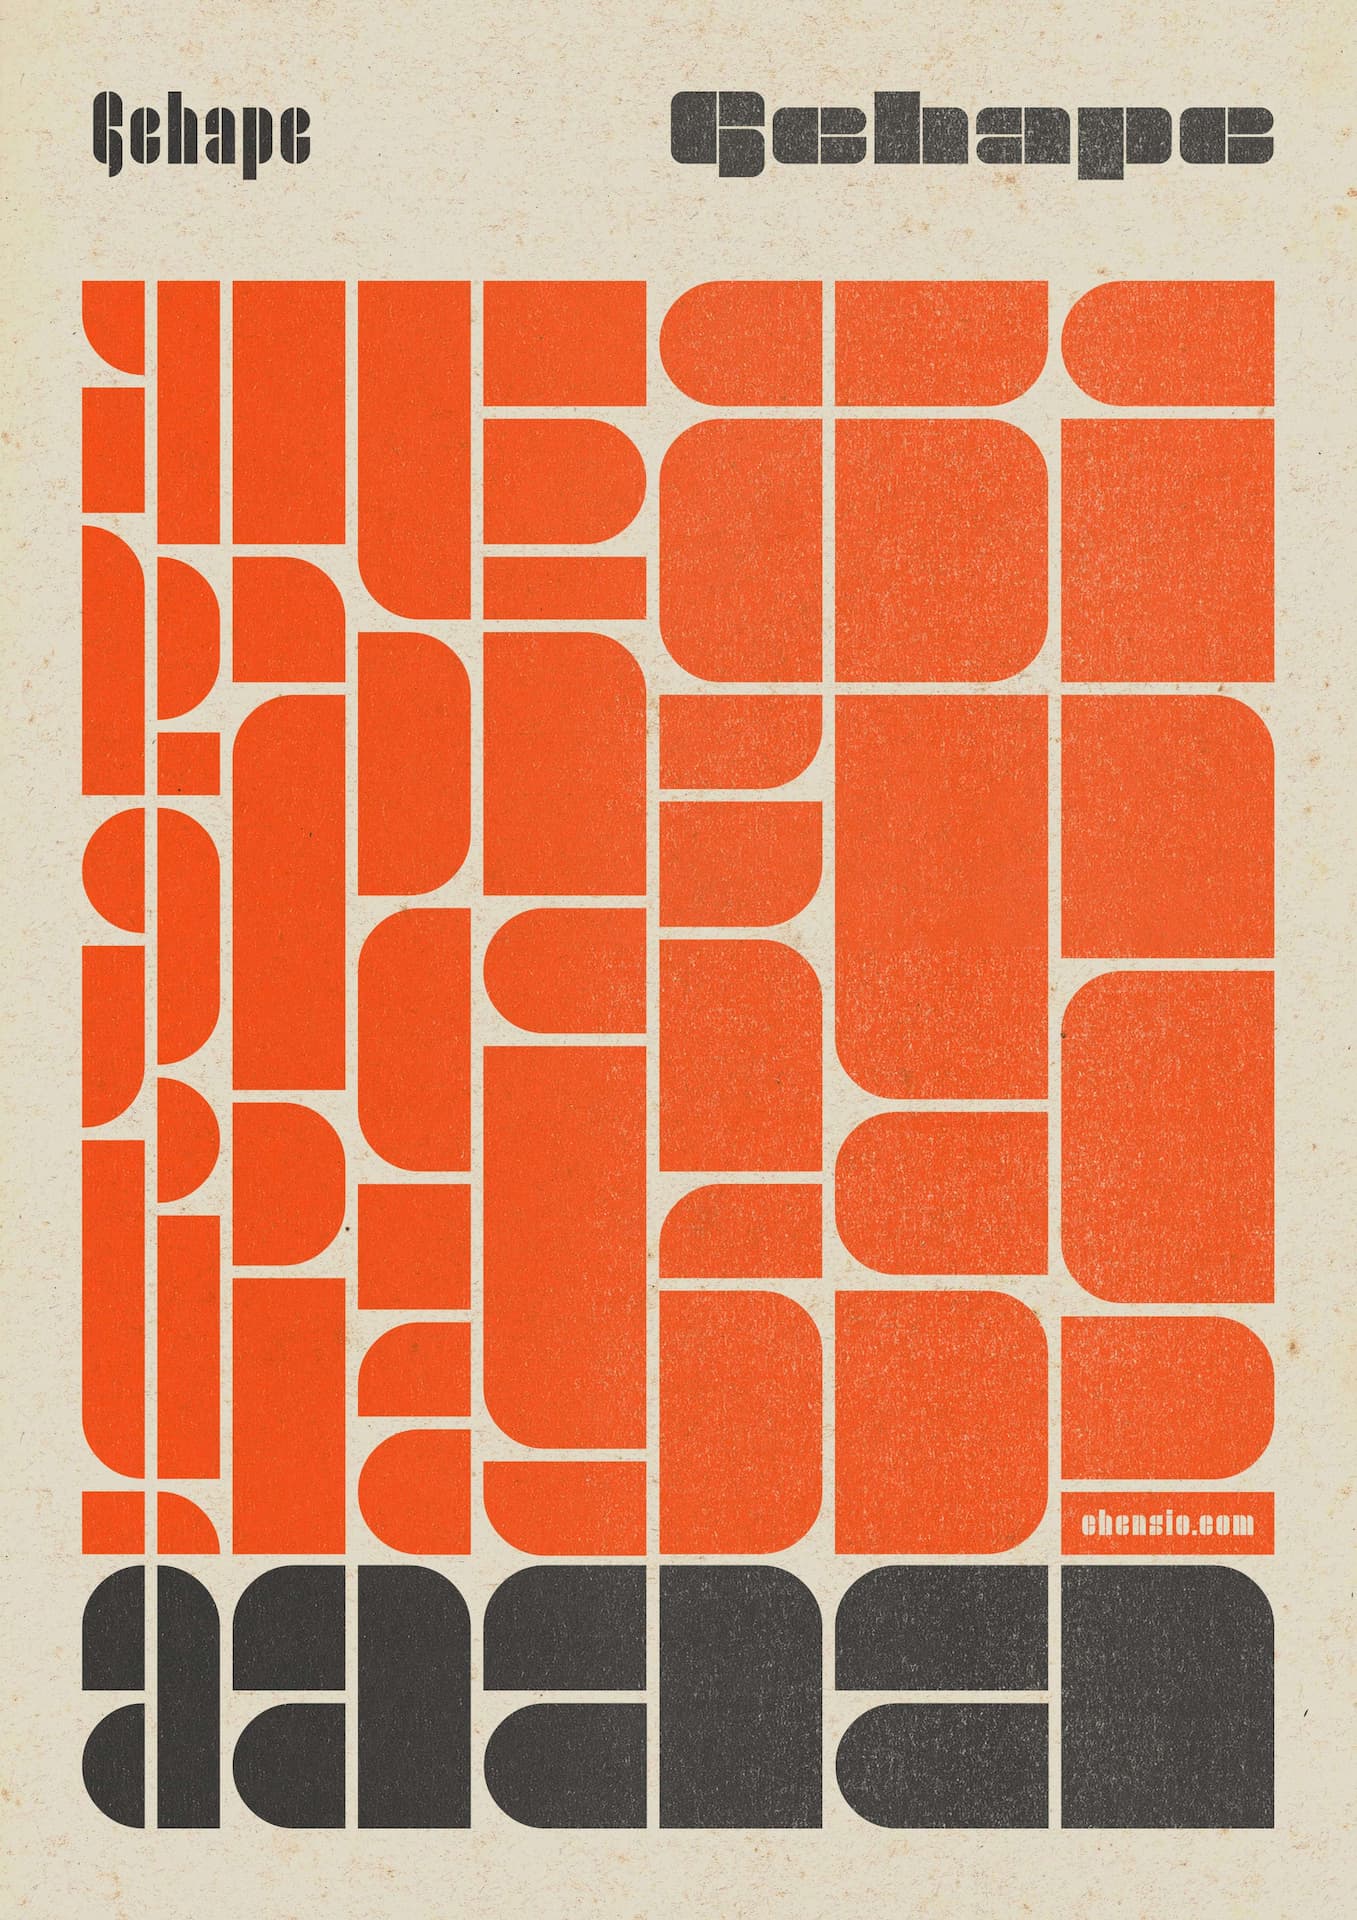 Gehape, modular font vintage poster promotion